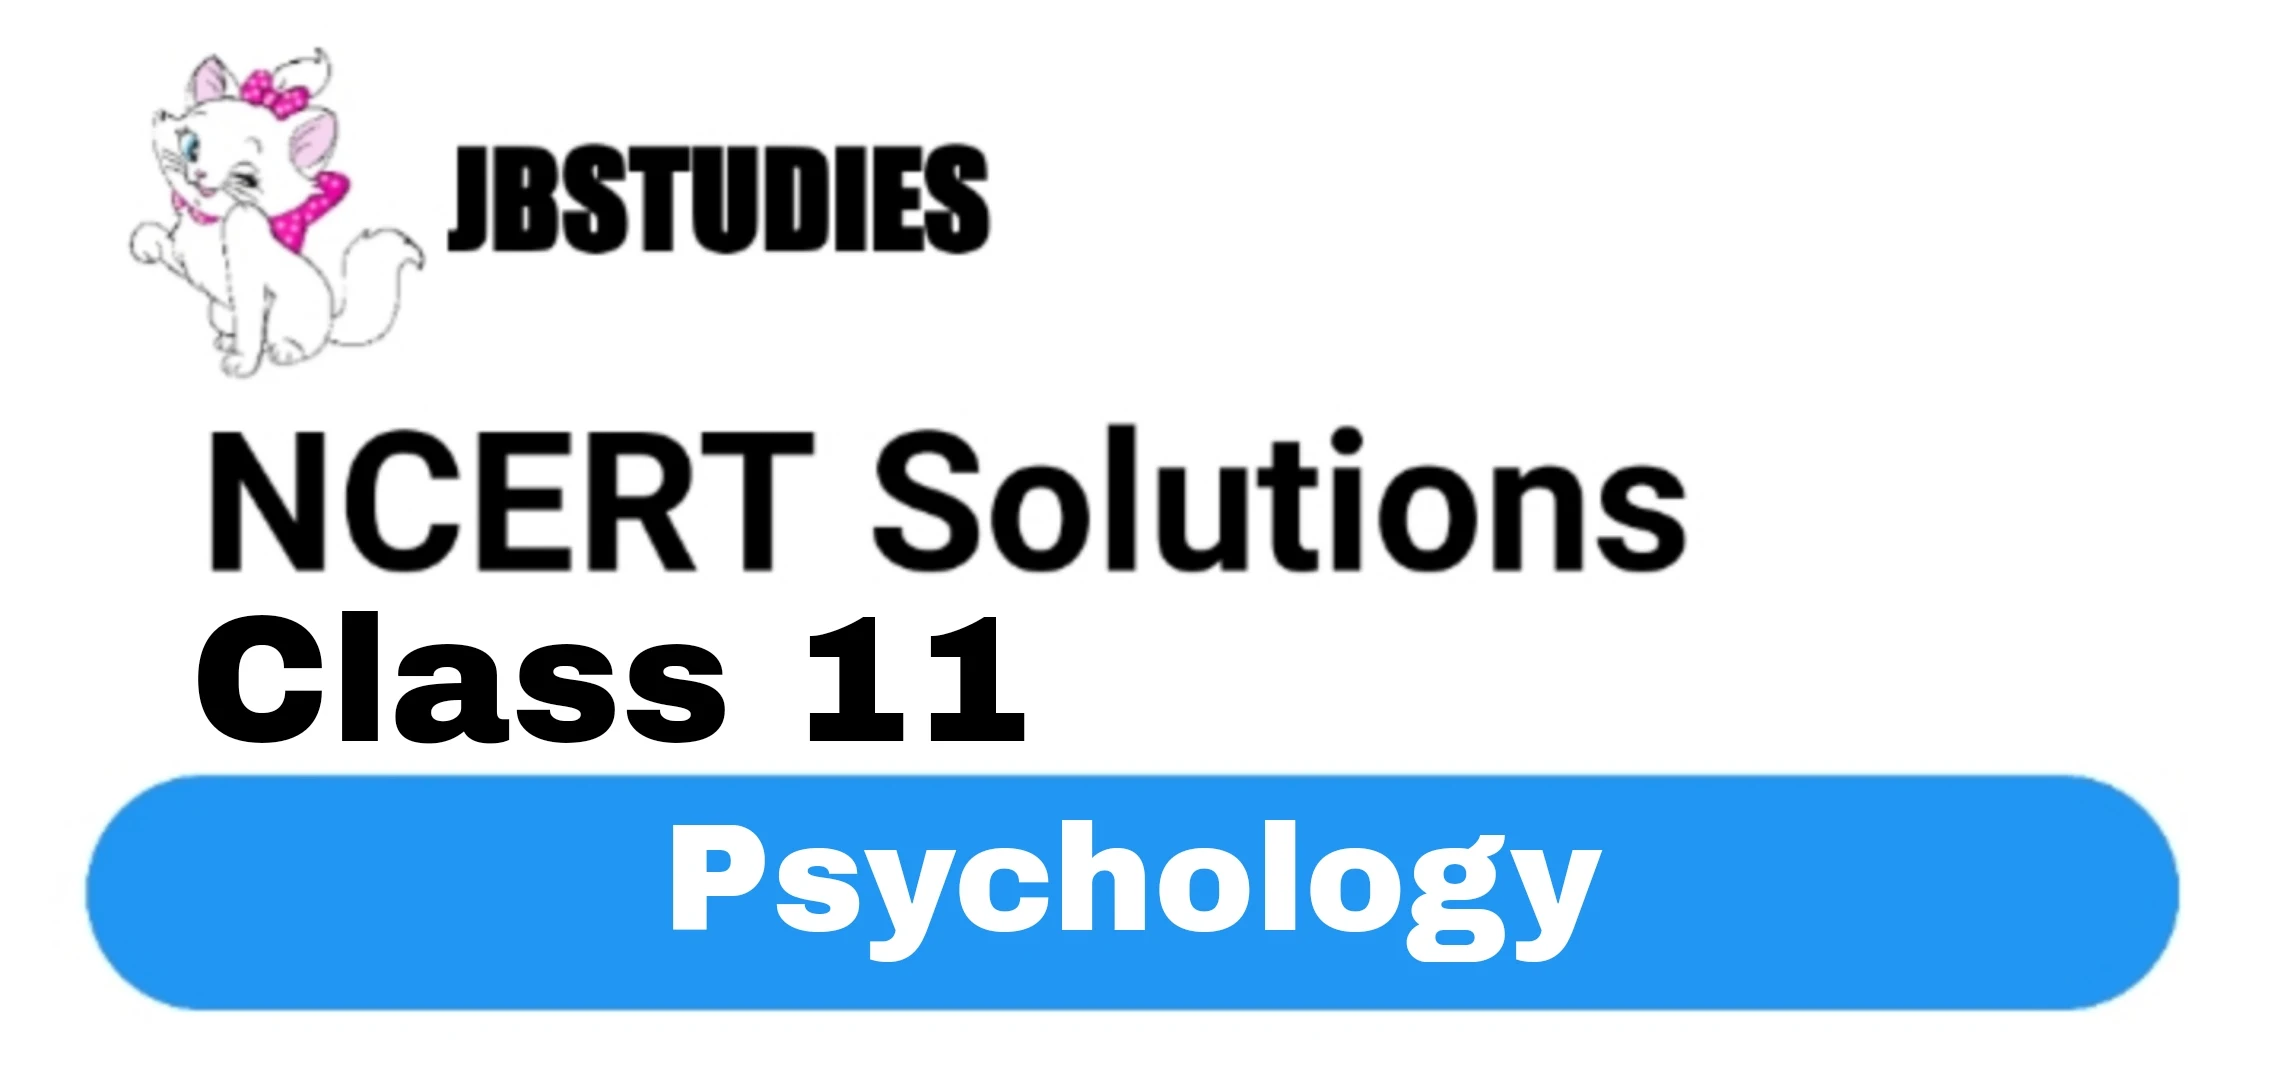 NCERT Solutions Class 11 Psychology